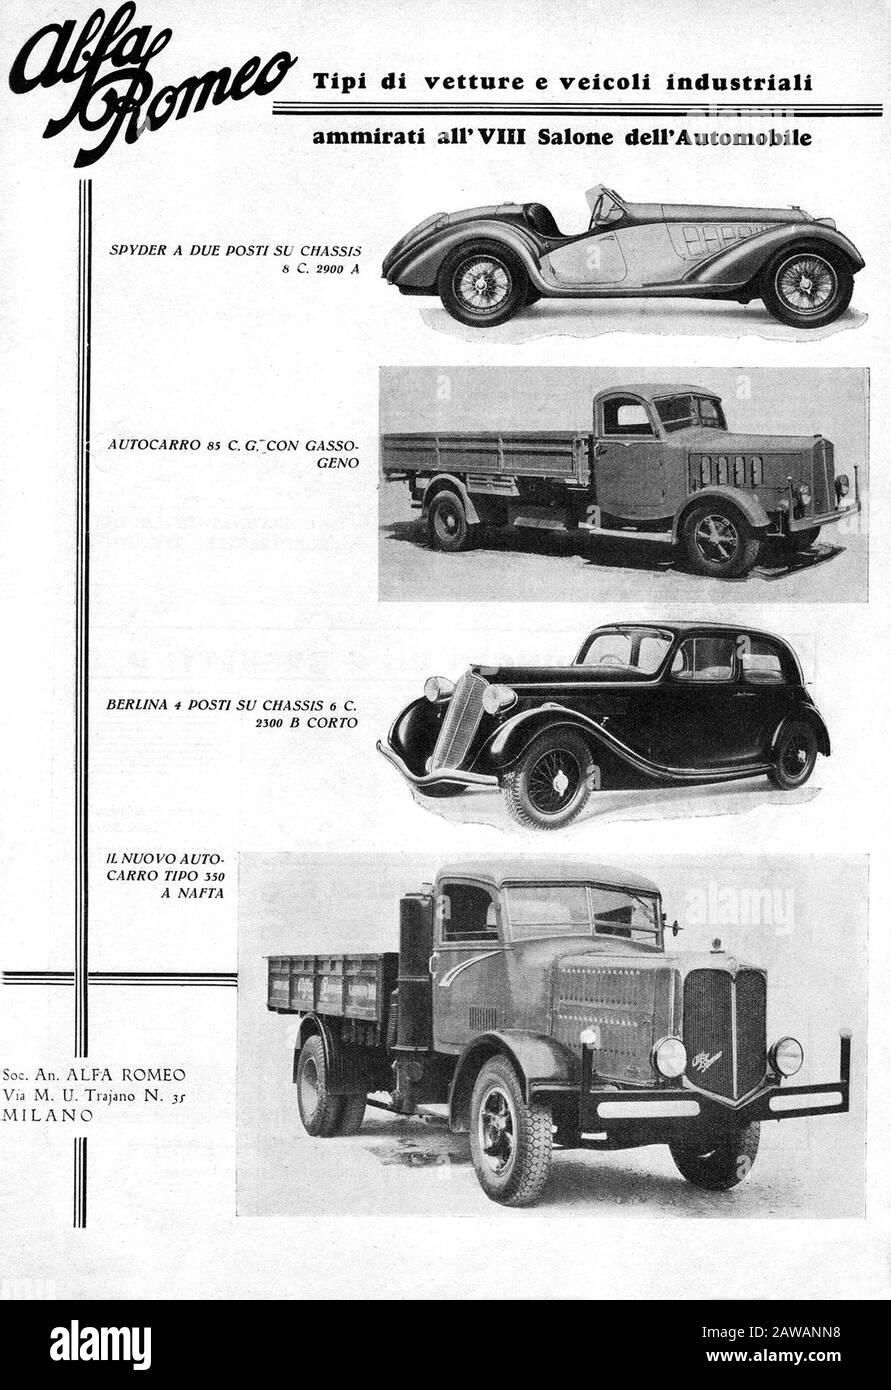 1935 , MILAN , ITALIE : L'industrie automobile italienne ALFA ROMEO publicité . - VEICOLI INDUSTRIALI - automobile - automobiles - automobiles - automobile - industriel - pub Banque D'Images